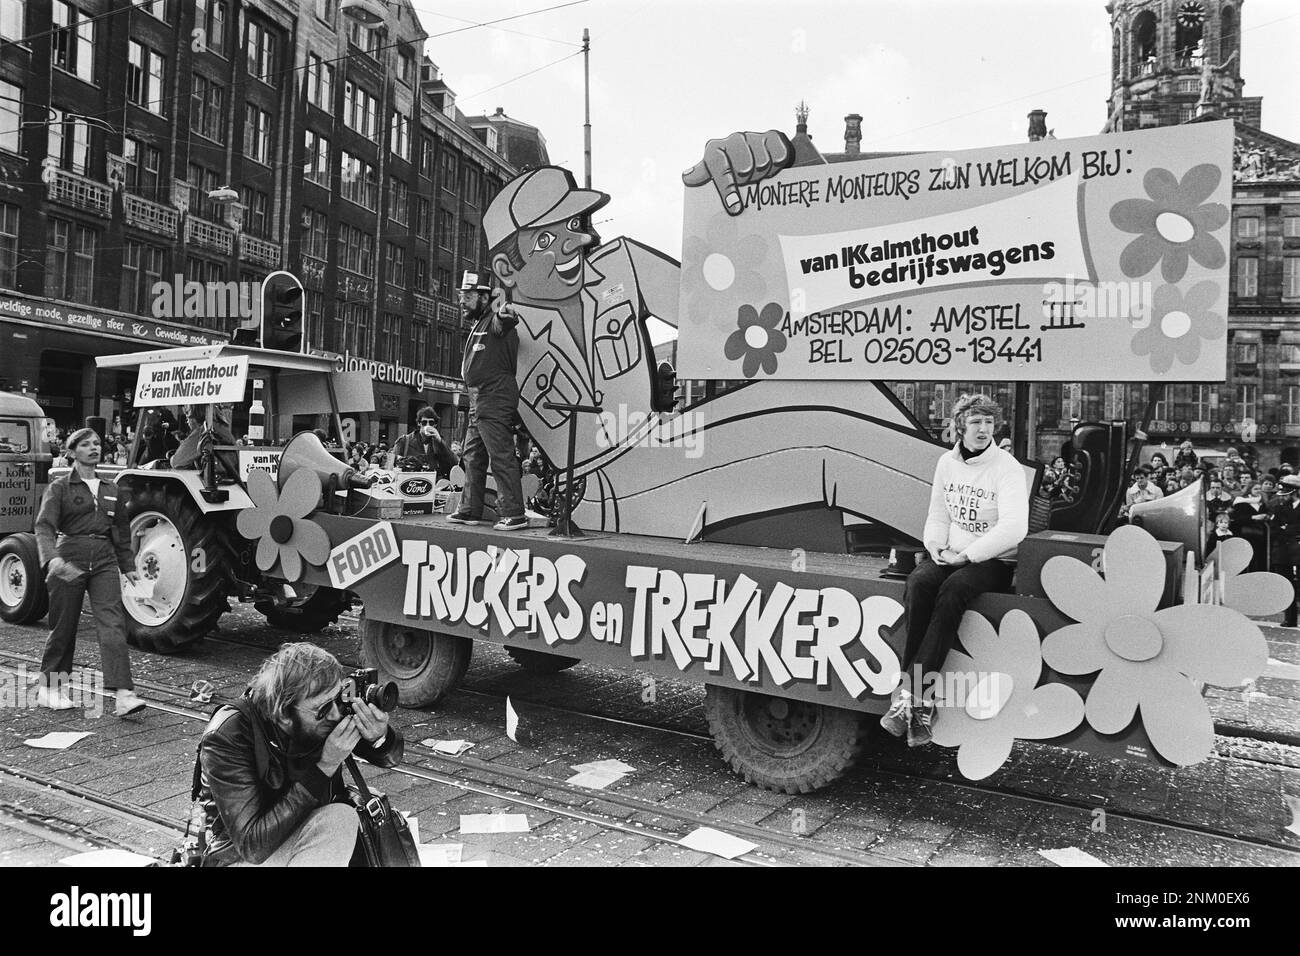 Niederländische Geschichte: Karneval in Amsterdam, kommission Firma Kalmhout und van Niel (Auto mit liegendem Automechaniker) Schwimmer, Fotograf im Vordergrund ca. 10. Februar 1980 Stockfoto